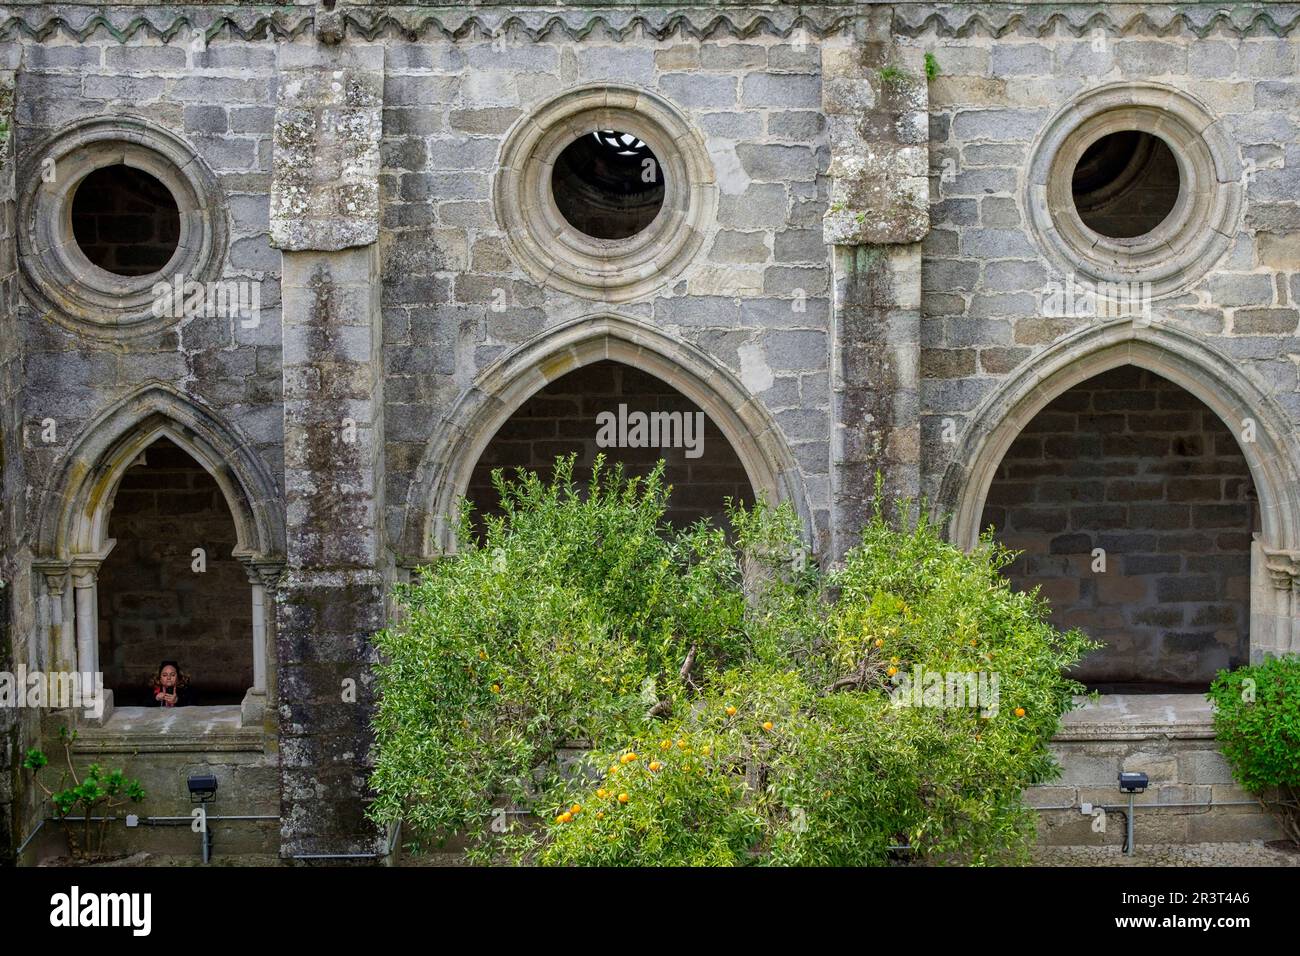 claustro, construido entre 1317 y 1340, estilo gótico, catedral de Évora, Basílica Sé Catedral de Nossa Senhora da Assunção, Évora, Alentejo, Portugal. Stock Photo